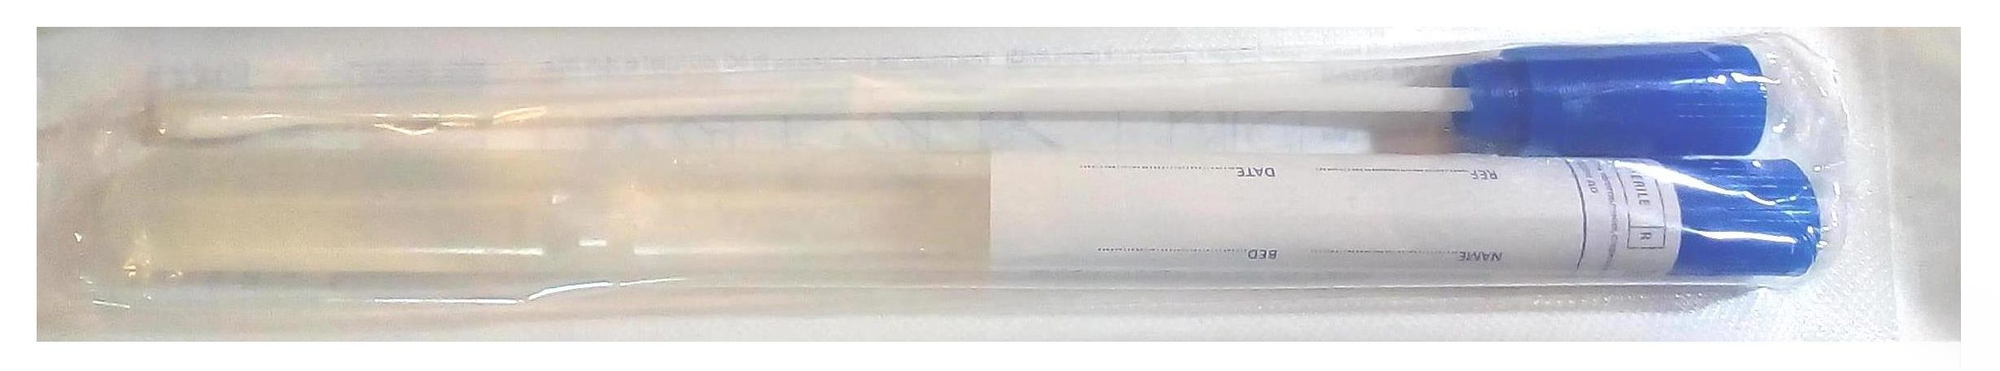 Пробирка полимерная с наполнителями(зондом и транспортной средой Cary Blair),стерильная индивидуальная упаковка.